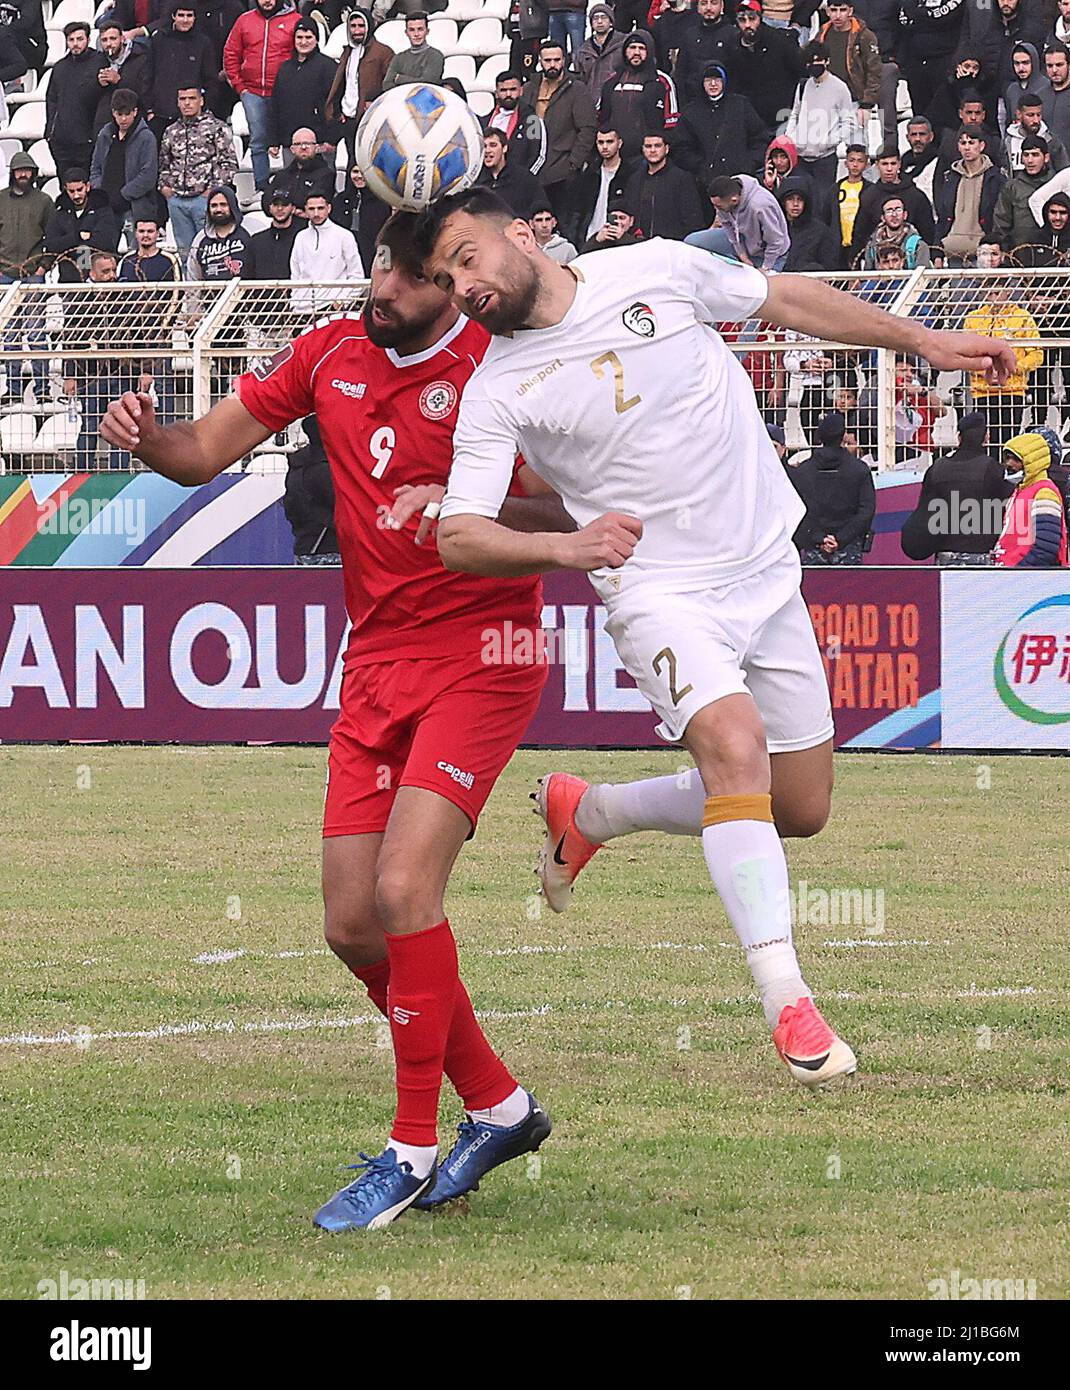 Fußball - Weltmeisterschaft - Asiatische Qualifikationsspiele - Gruppe A -  Libanon gegen Syrien - Saida Municipal Stadium, Sidon, Libanon - 24. März